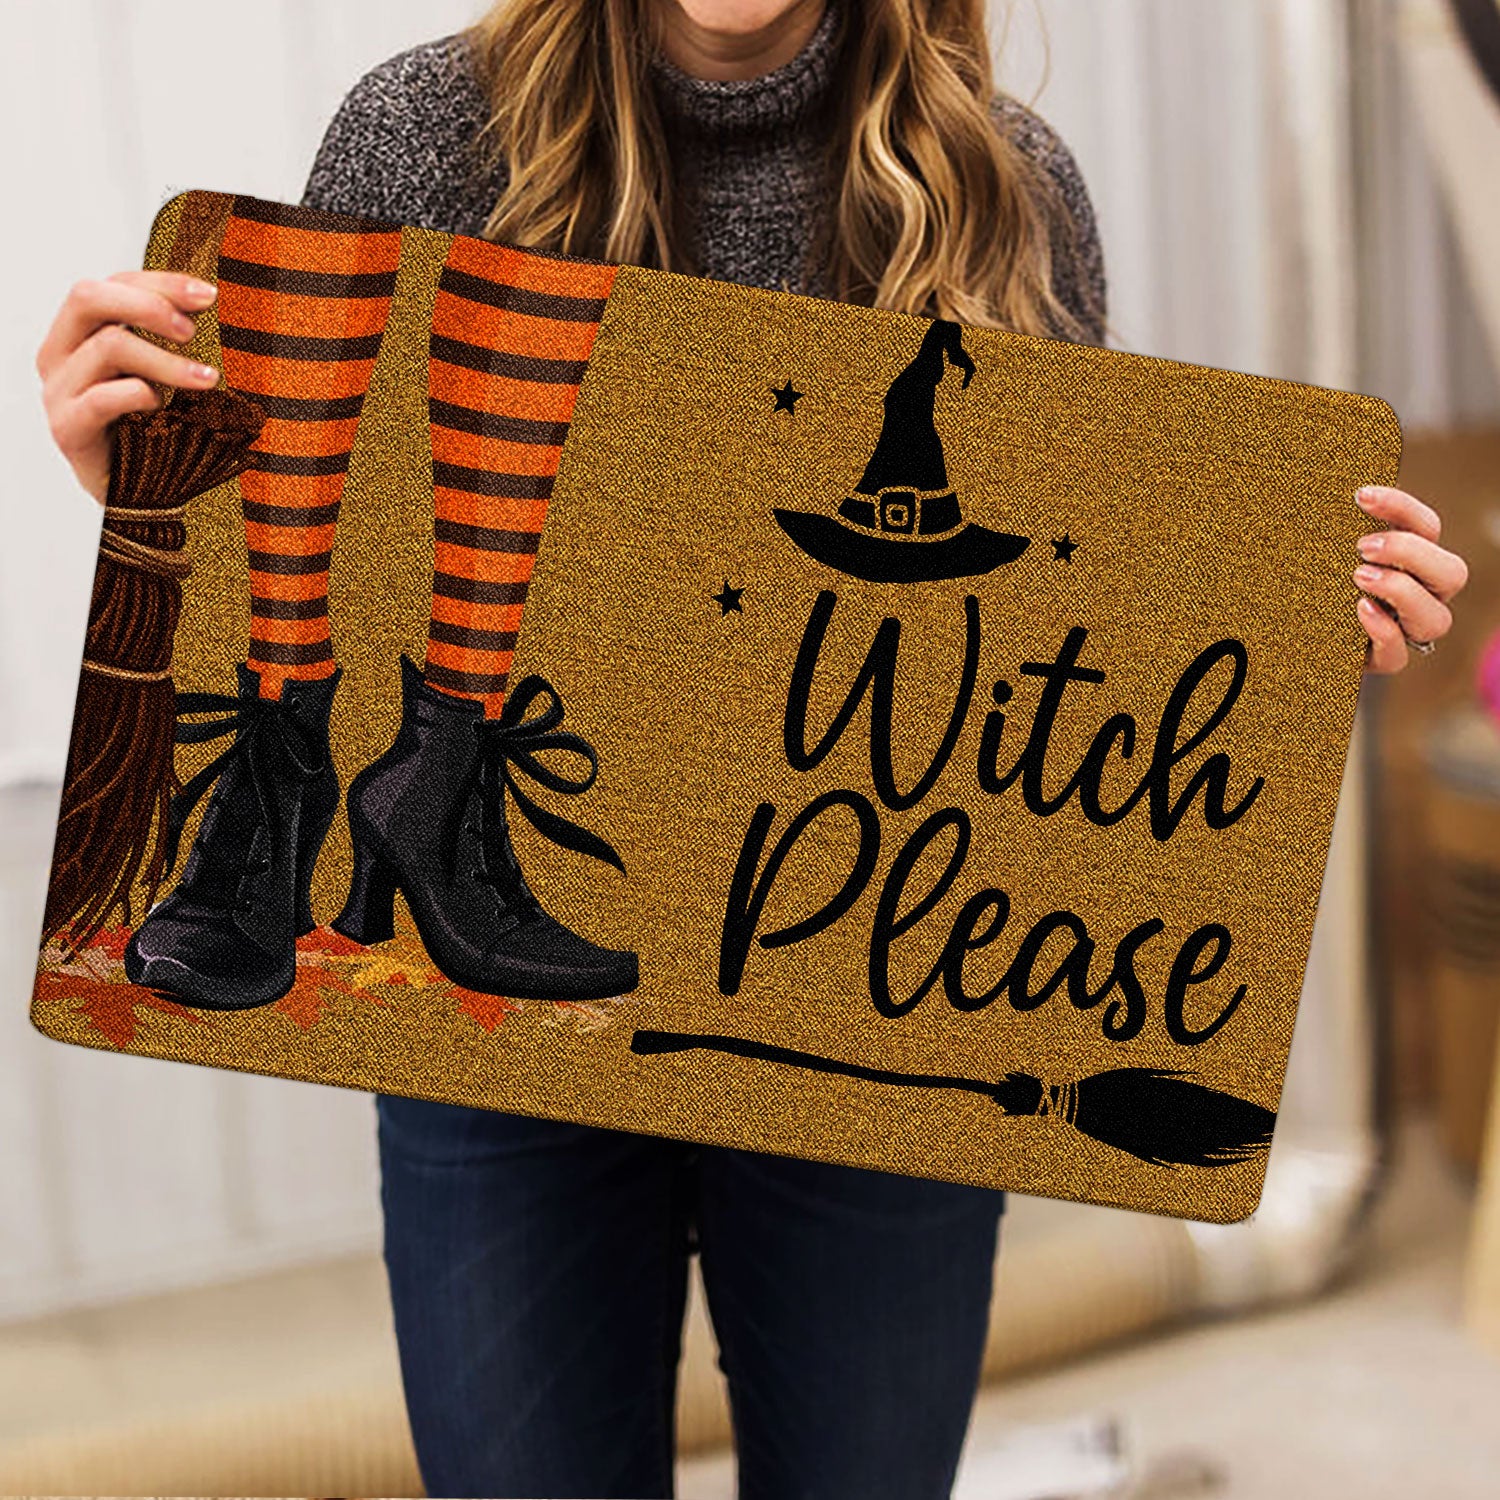 Ohaprints-Doormat-Outdoor-Indoor-Witch-Wicca-Trick-Or-Treat-Witch-Please-Happy-Halloween-Rubber-Door-Mat-1943-